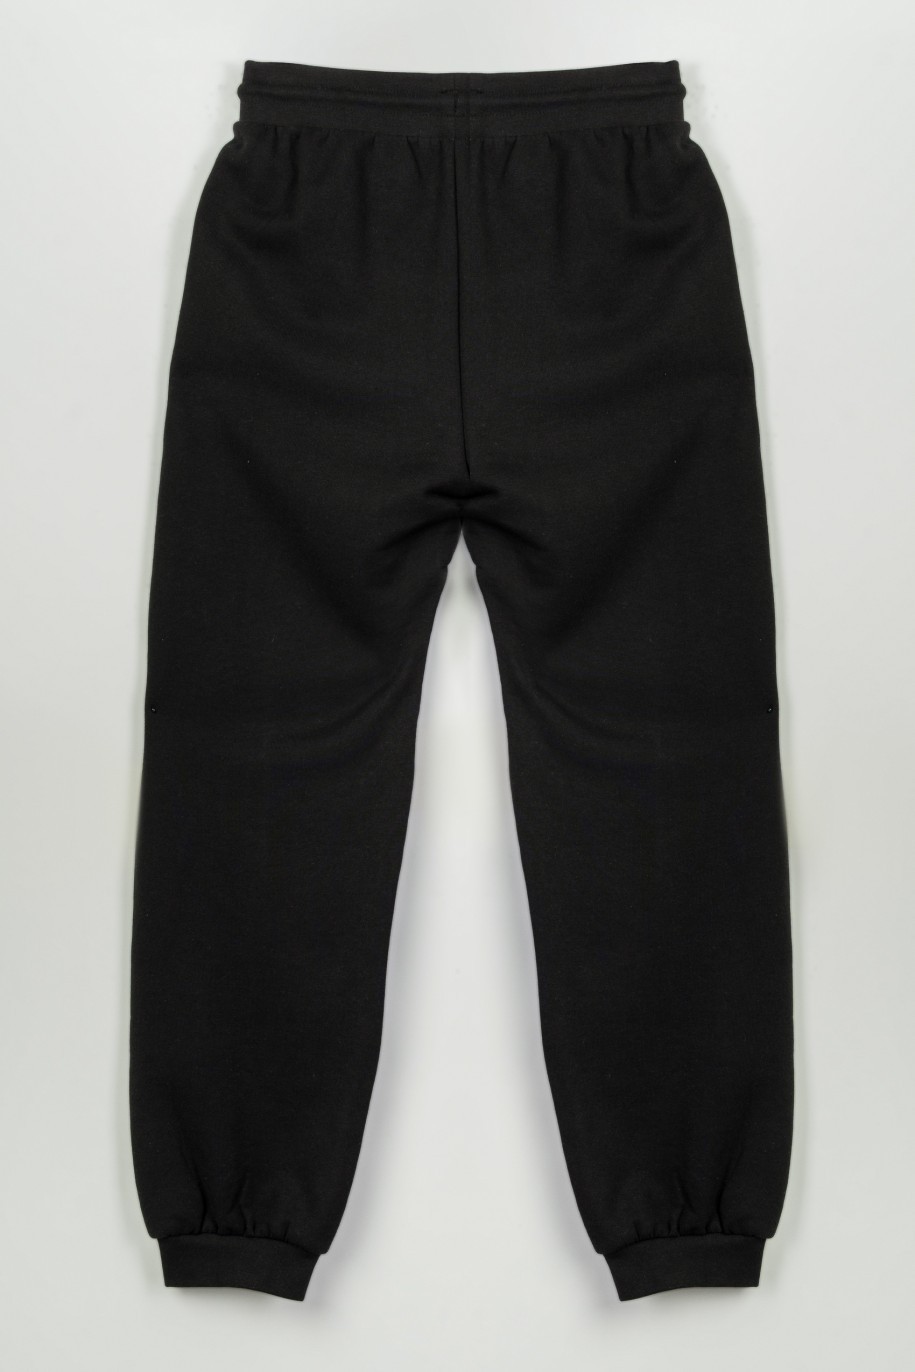 Czarne spodnie dresowe z hologramowym nadrukiem na nogawce - 47264